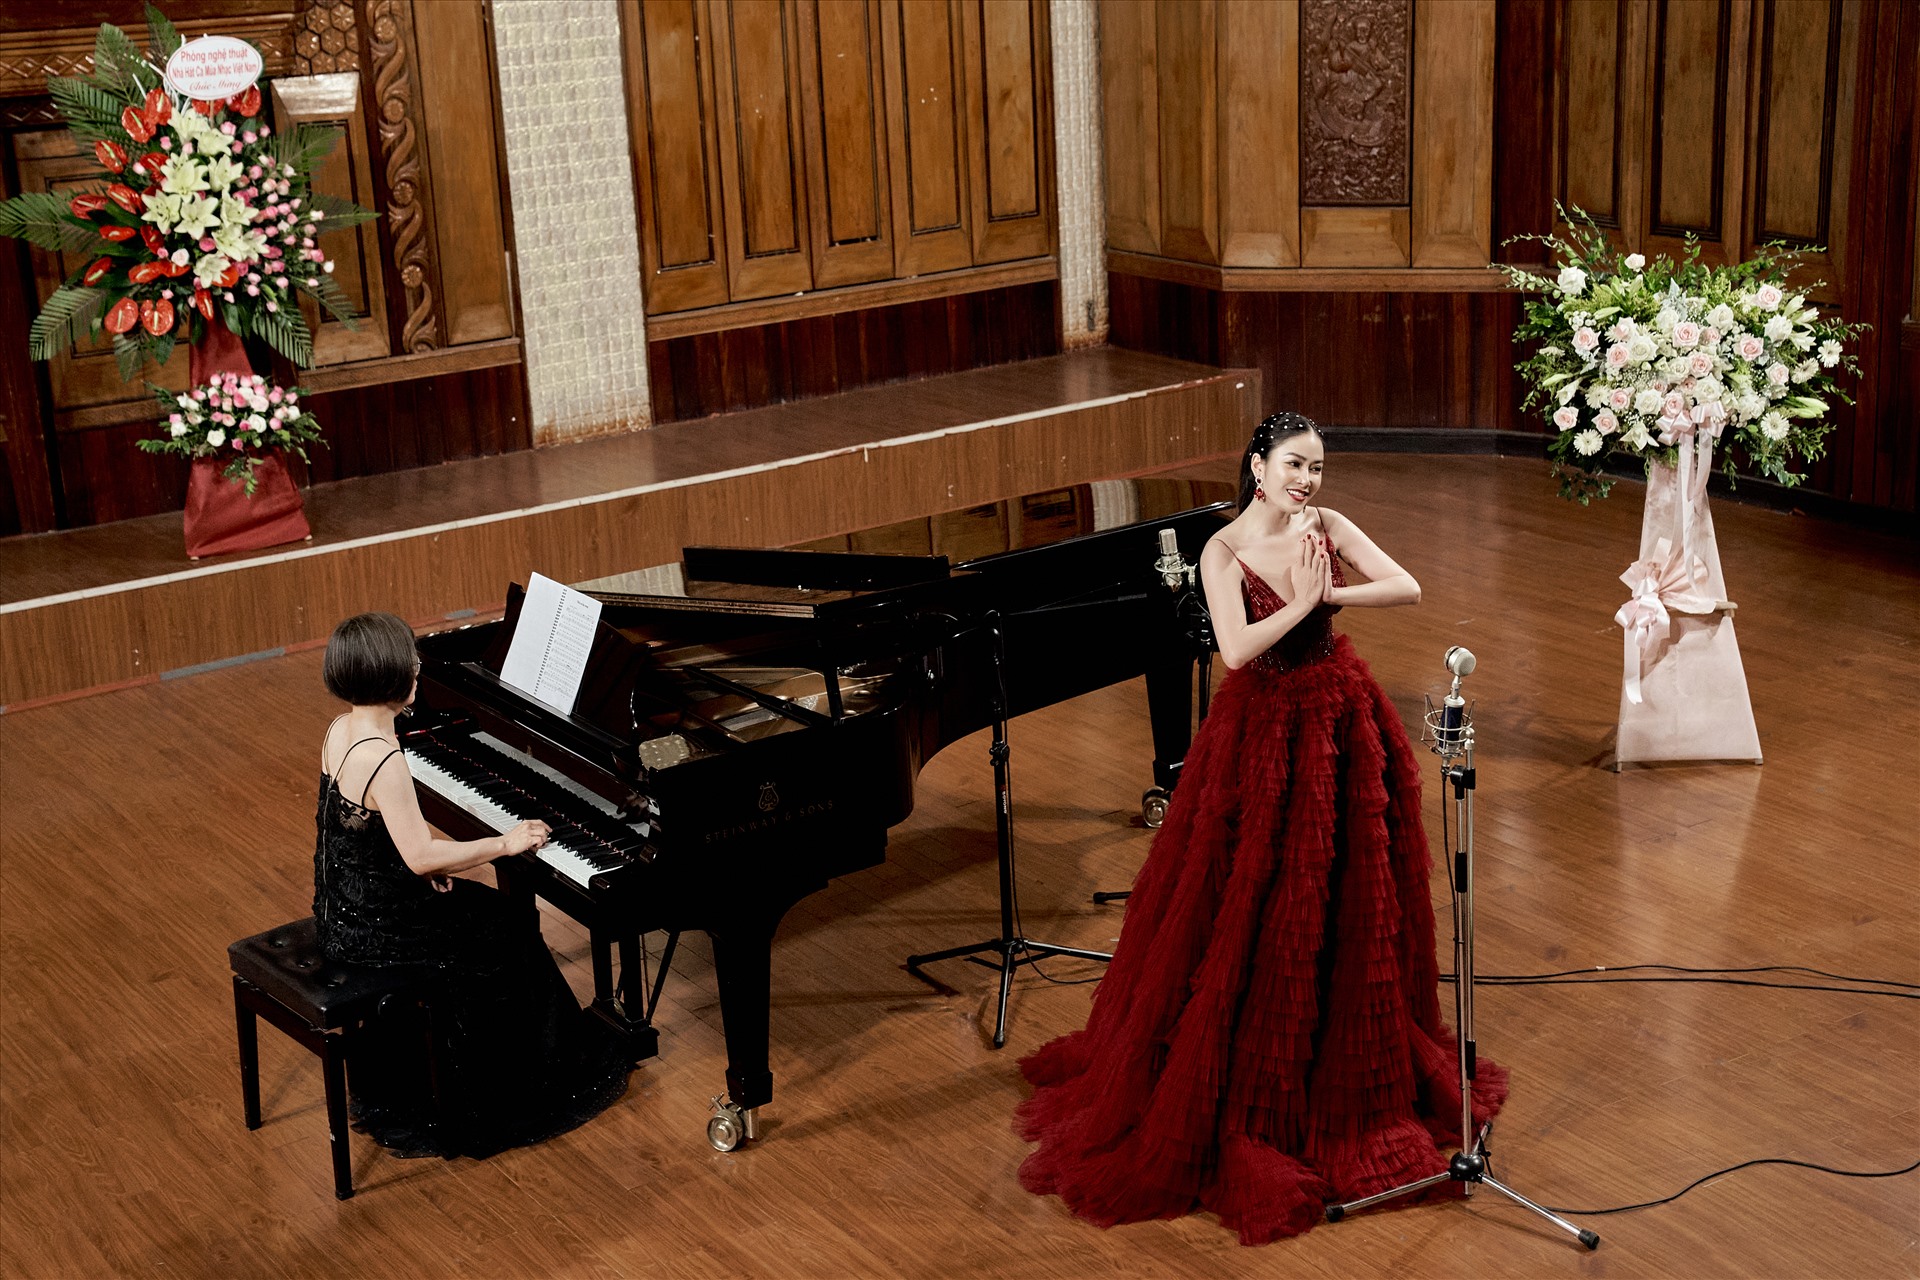 Hoa hậu Tuyết Nga nhận được sự đánh giá cao từ hội đồng chấm thi lễ tốt nghiệp thanh nhạc. Ảnh: Nhân vật cung cấp.